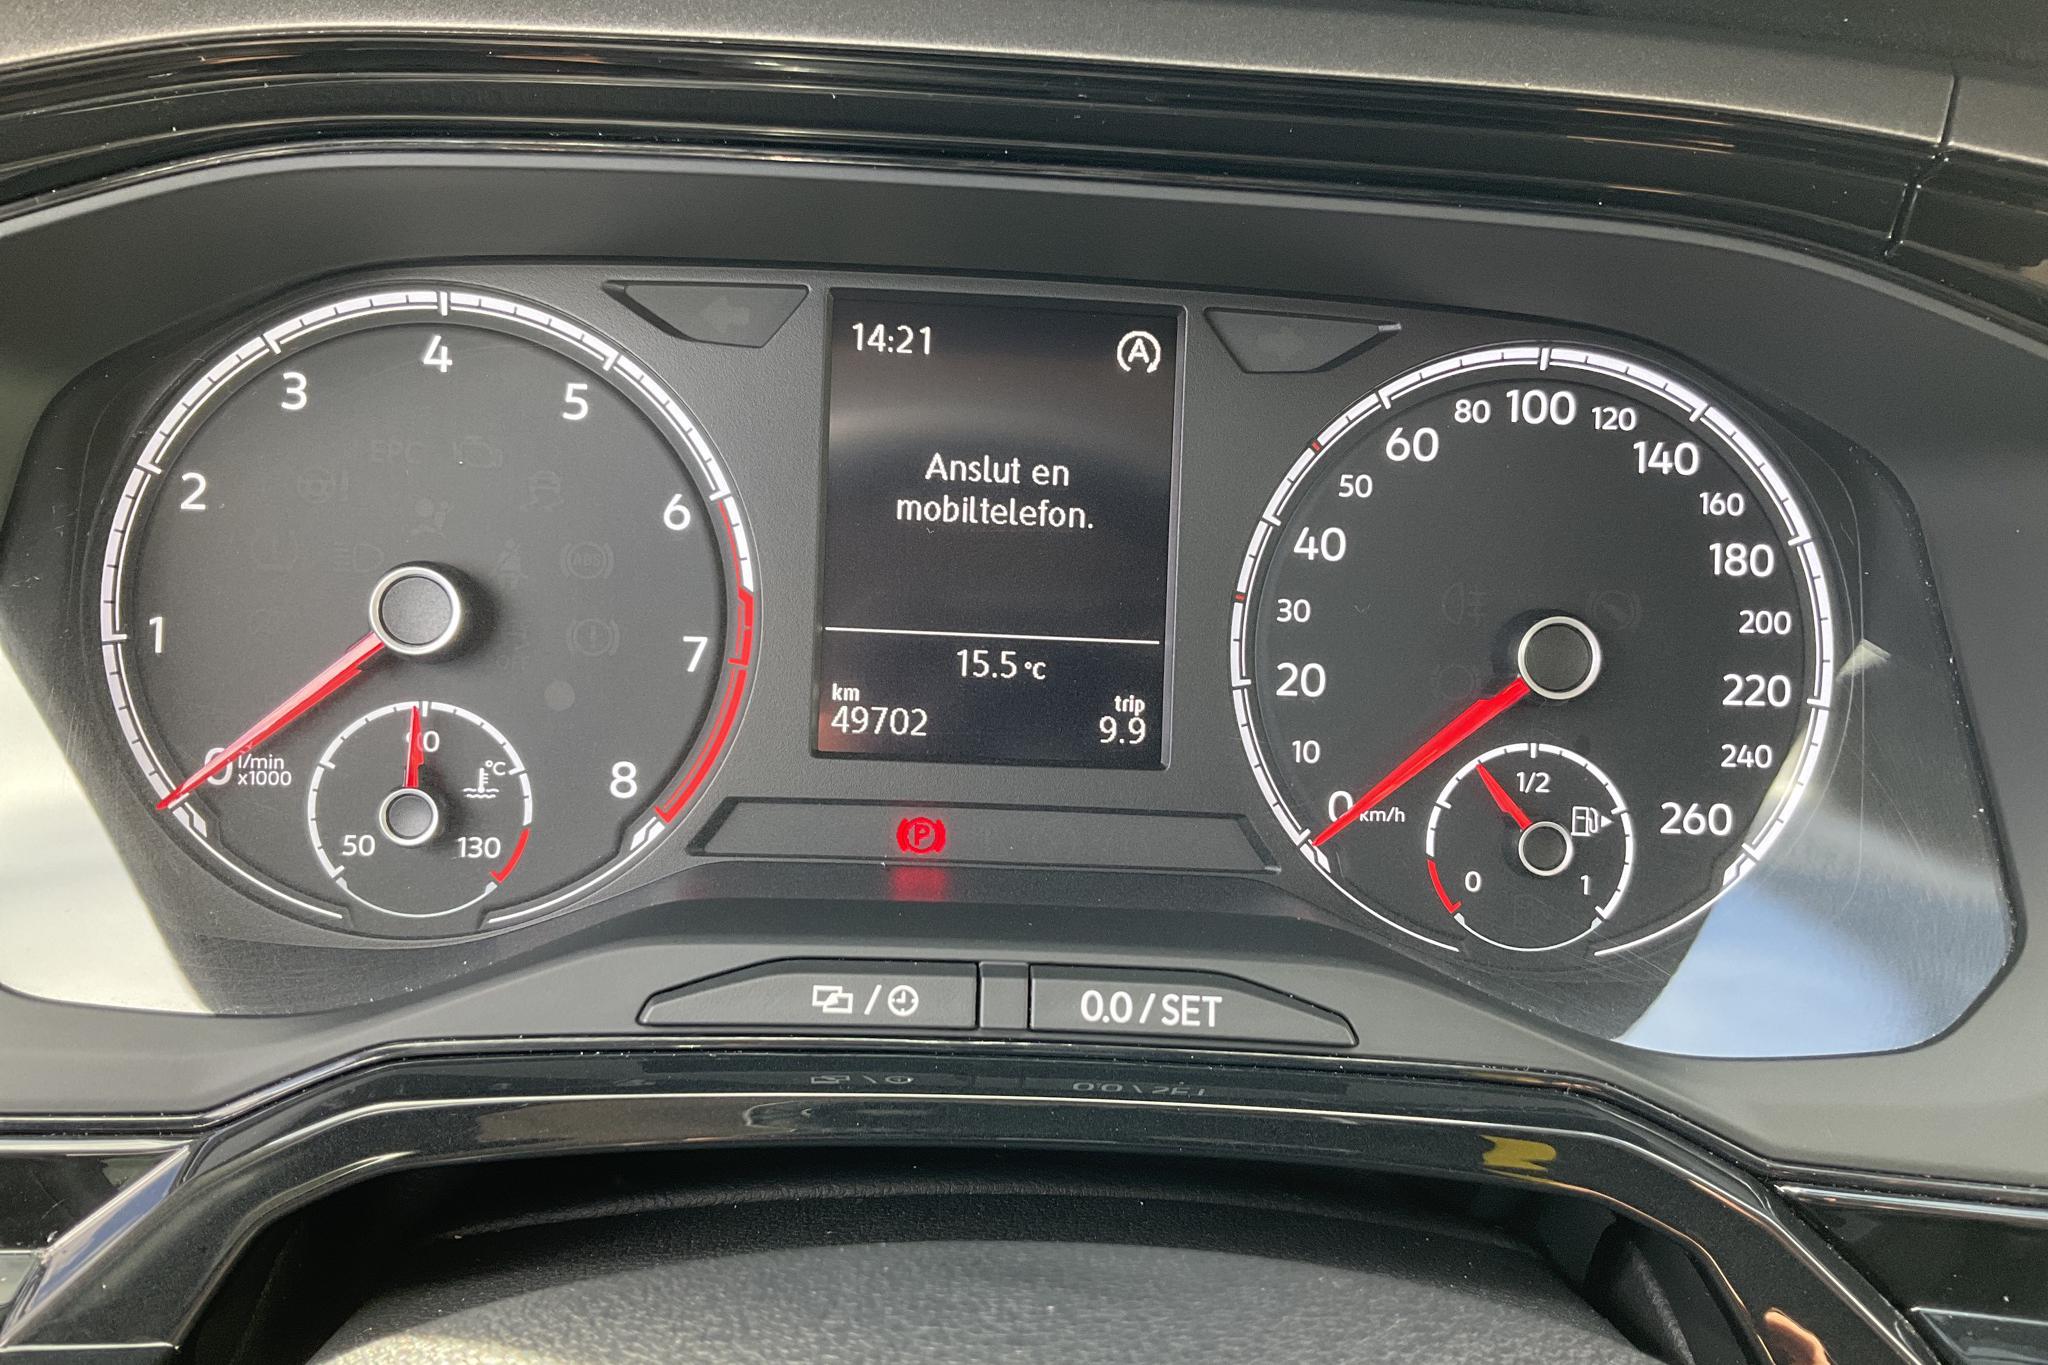 VW Polo 1.0 TSI 5dr (95hk) - 49 700 km - Manual - white - 2018